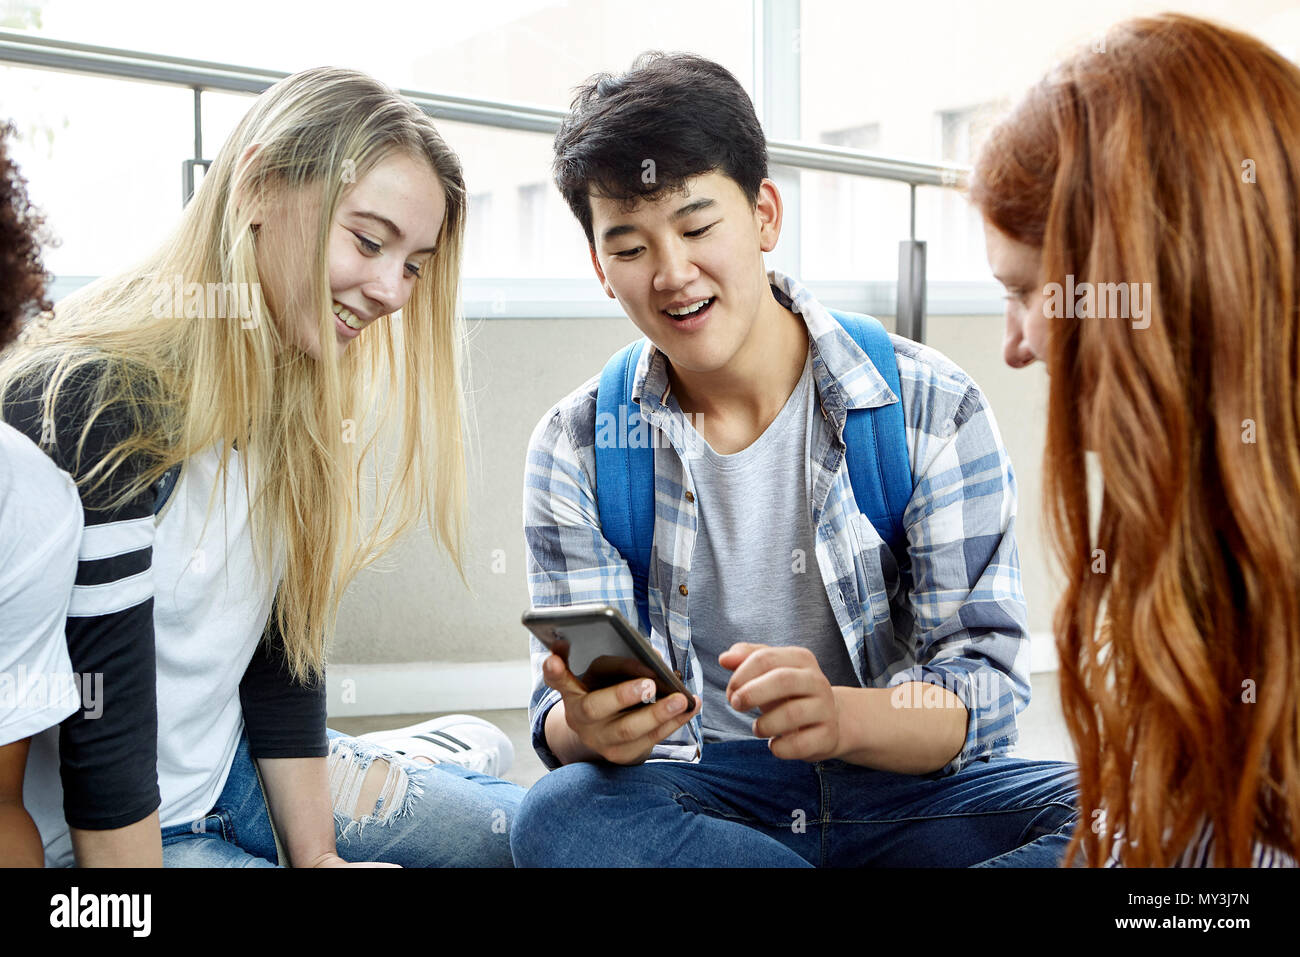 Estudiante mostrando teléfono inteligente a sus compañeros de clase Foto de stock